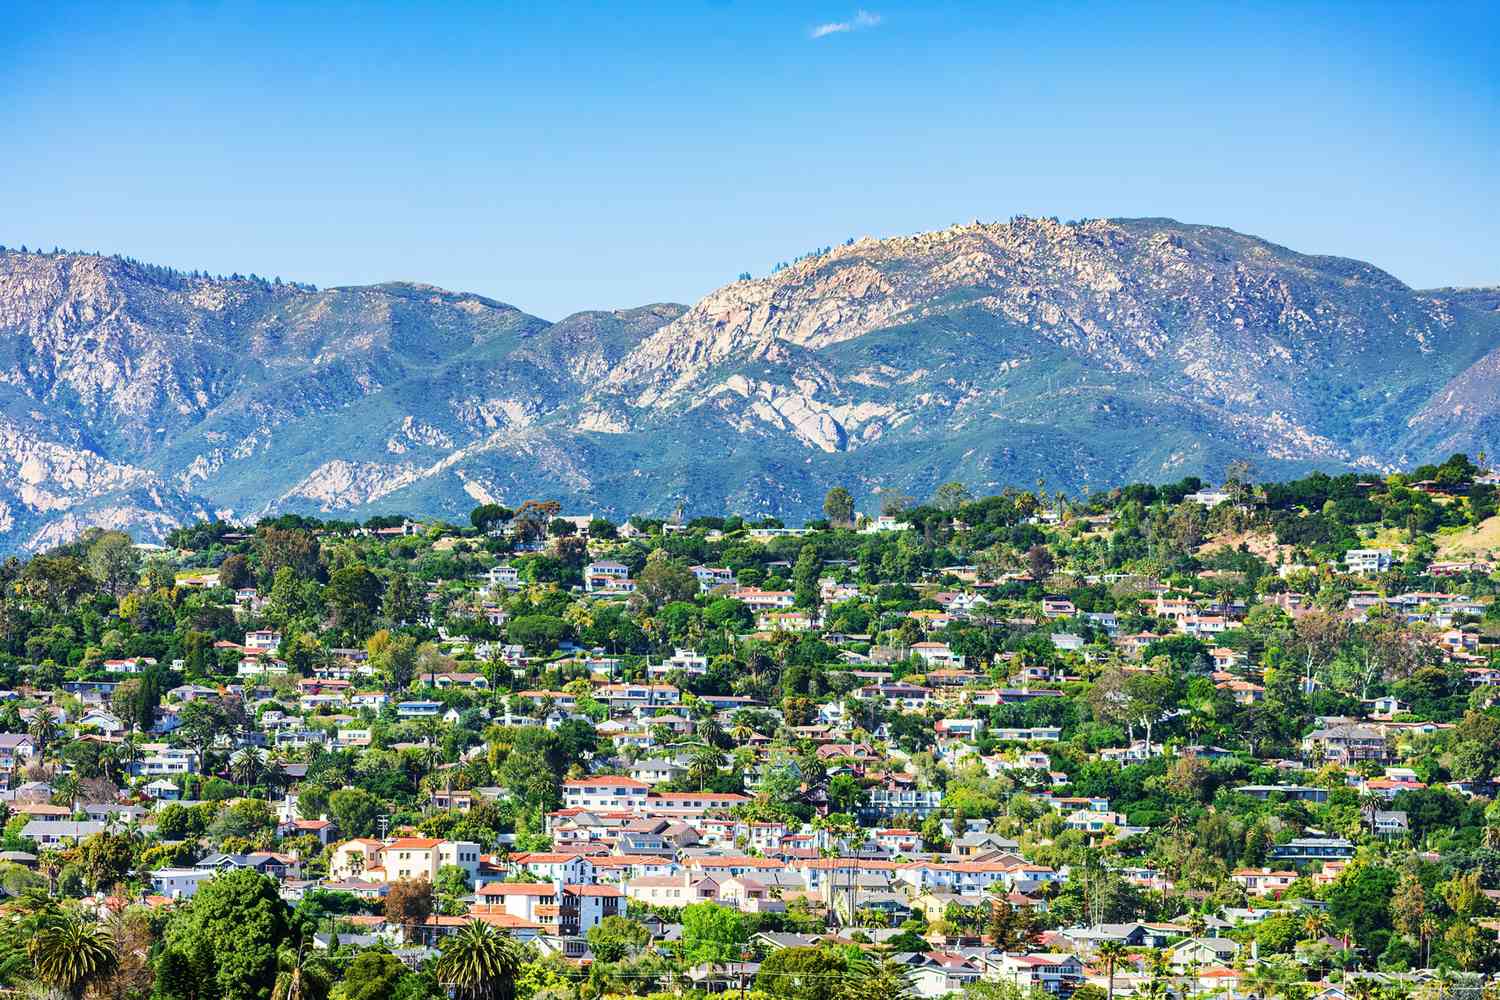 Vue panoramique d'un quartier résidentiel haut de gamme sur les pentes de la chaîne de montagnes de Santa Ynez à Santa Barbara, en Californie.